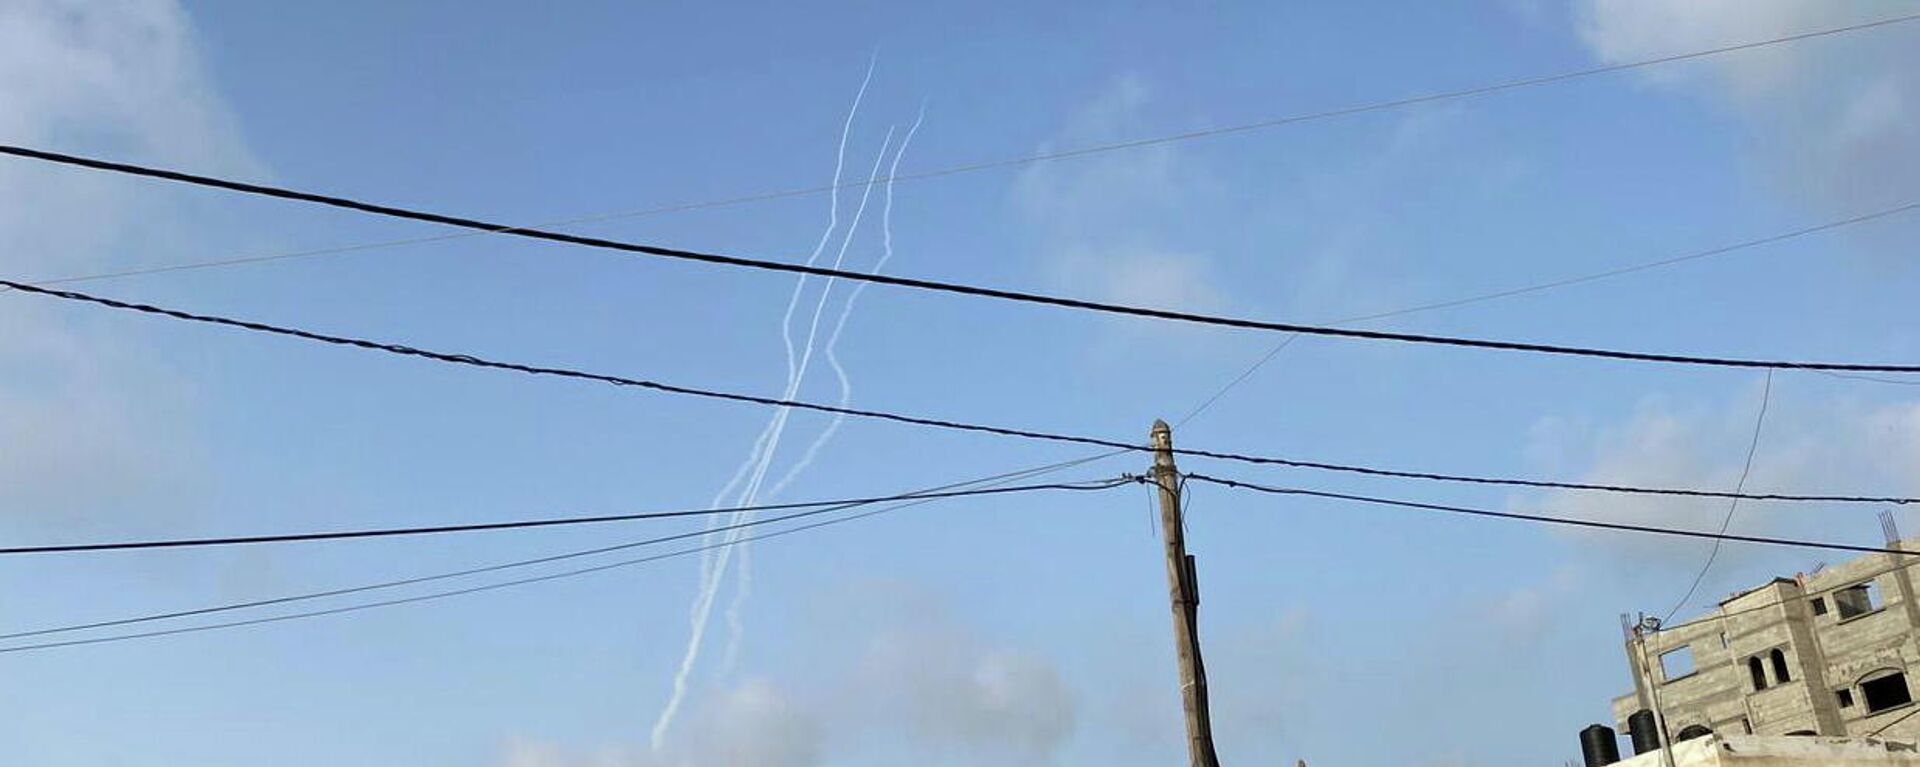 Lanzamiento de cohetes desde Gaza hacia Israel - Sputnik Mundo, 1920, 10.05.2021